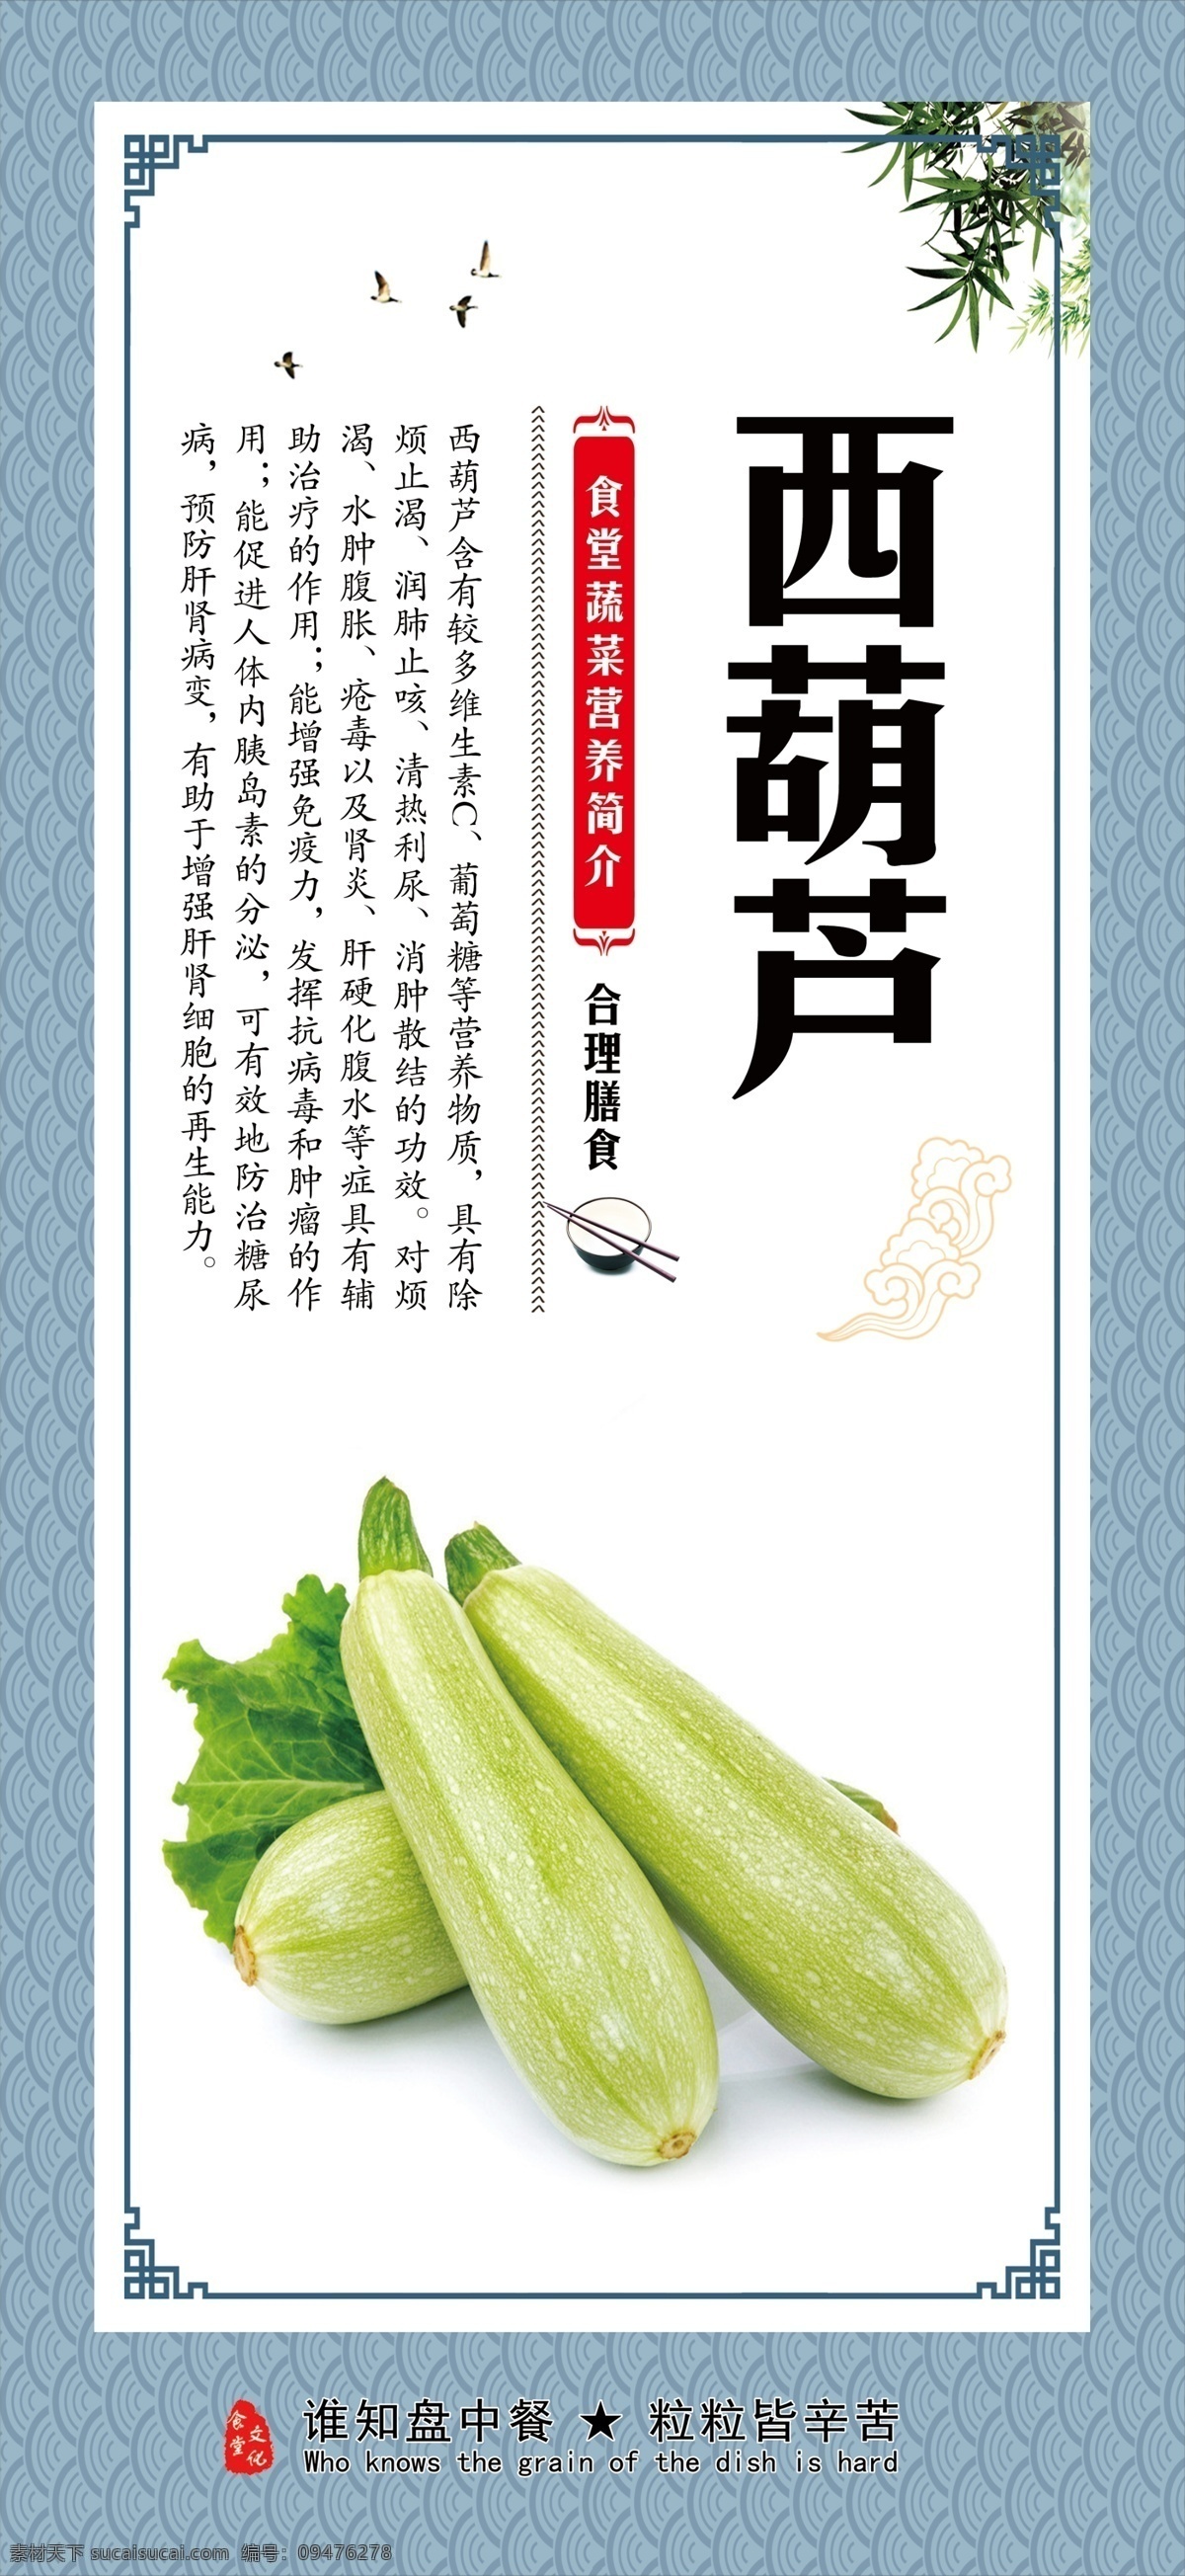 西葫芦 葫芦瓜 角瓜 餐饮 食堂文化 菜品 饮食文化 蔬菜介绍 饮食